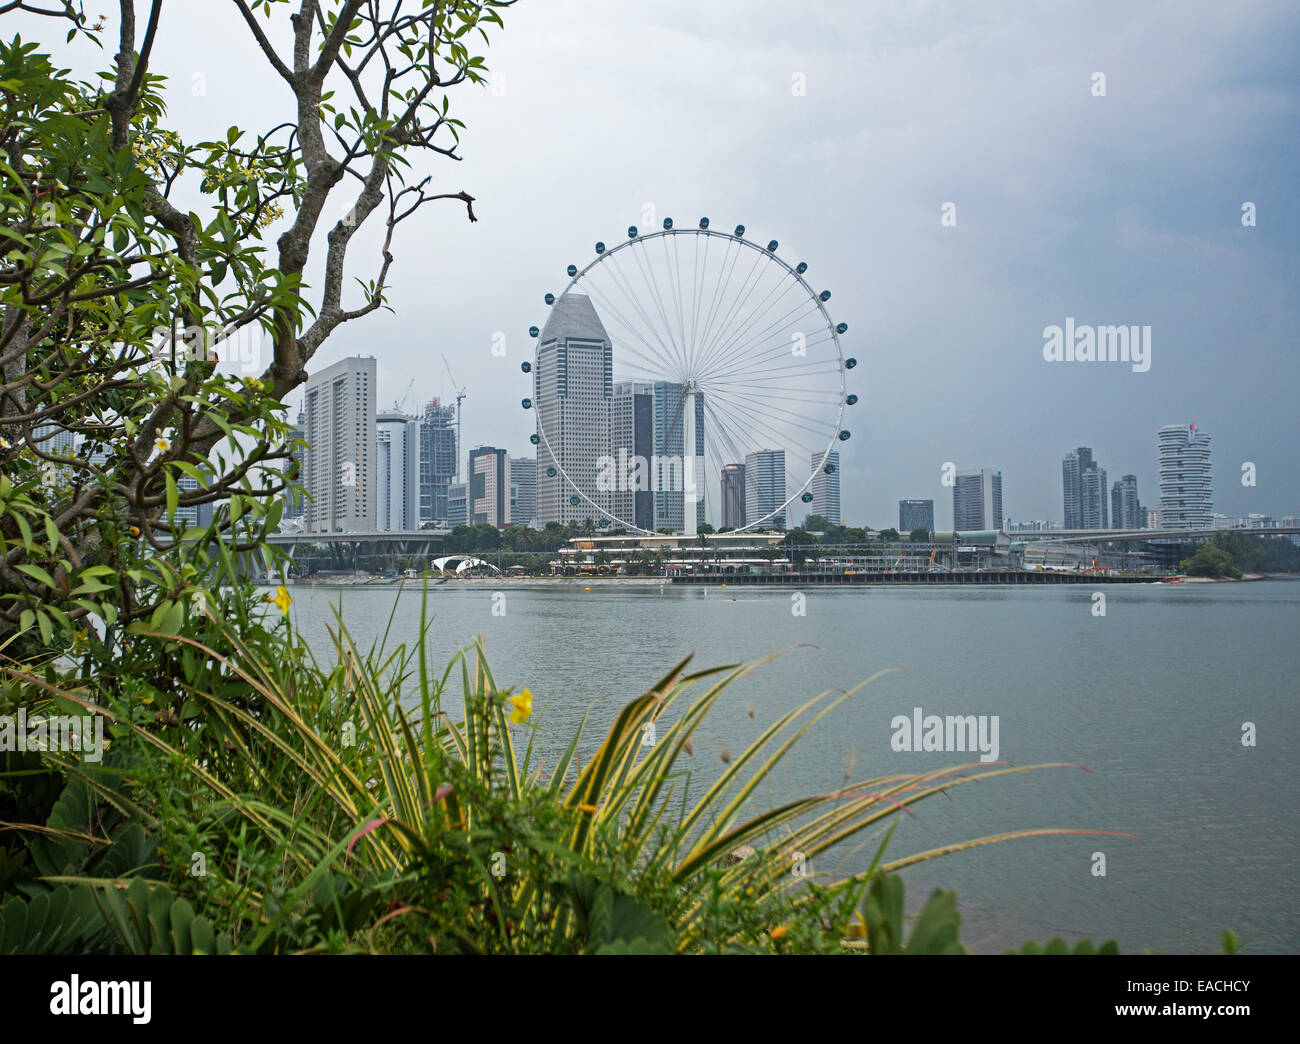 Vista de los rascacielos de la ciudad de Singapur con & enorme noria de observación junto a tranquilas aguas azules de la bahía Foto de stock